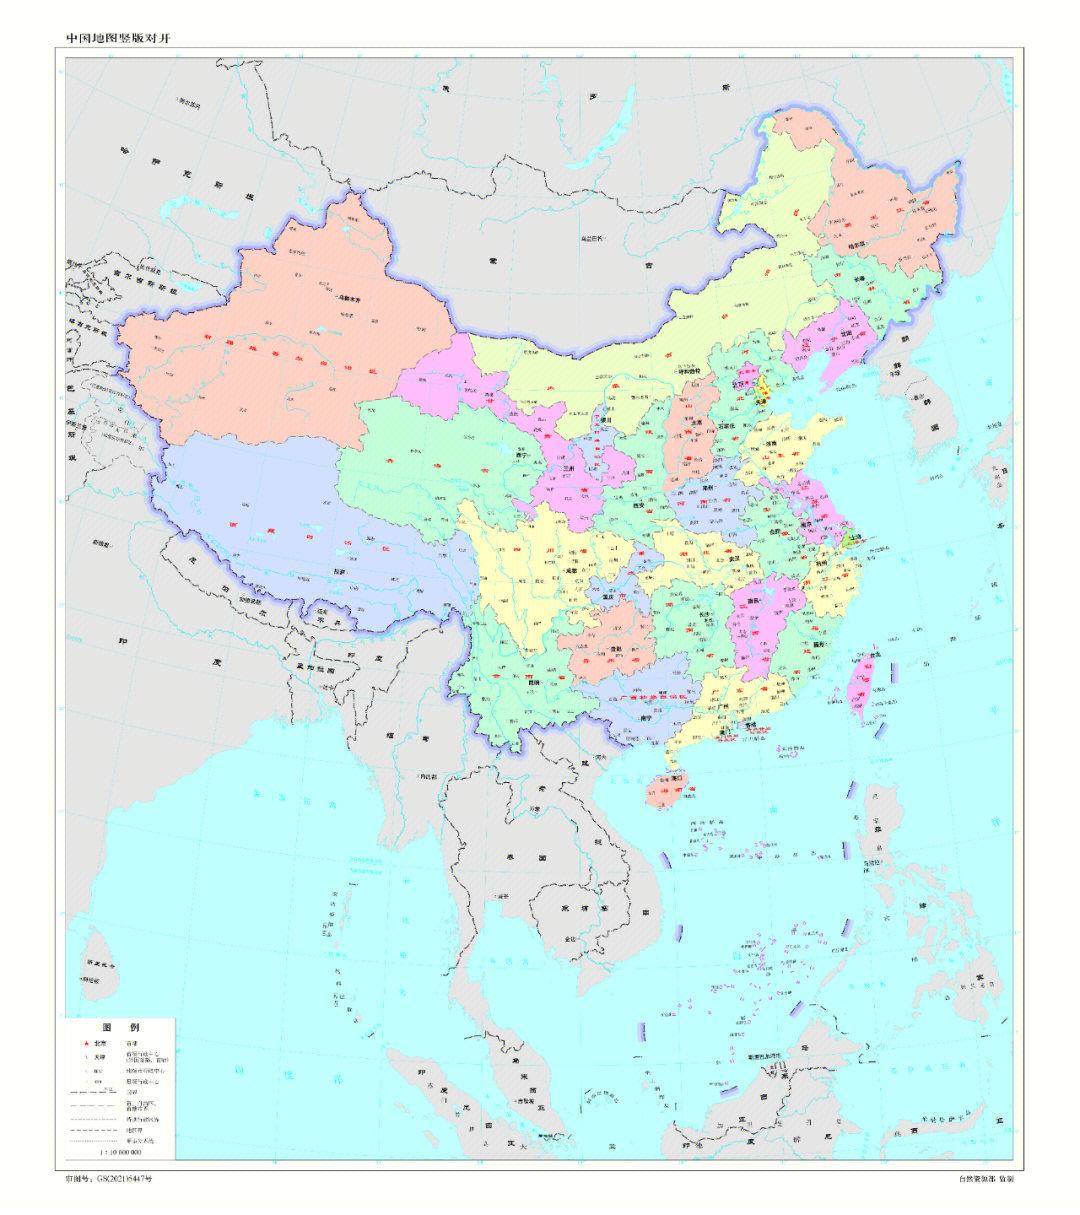 2022最新竖版中国地图来啦